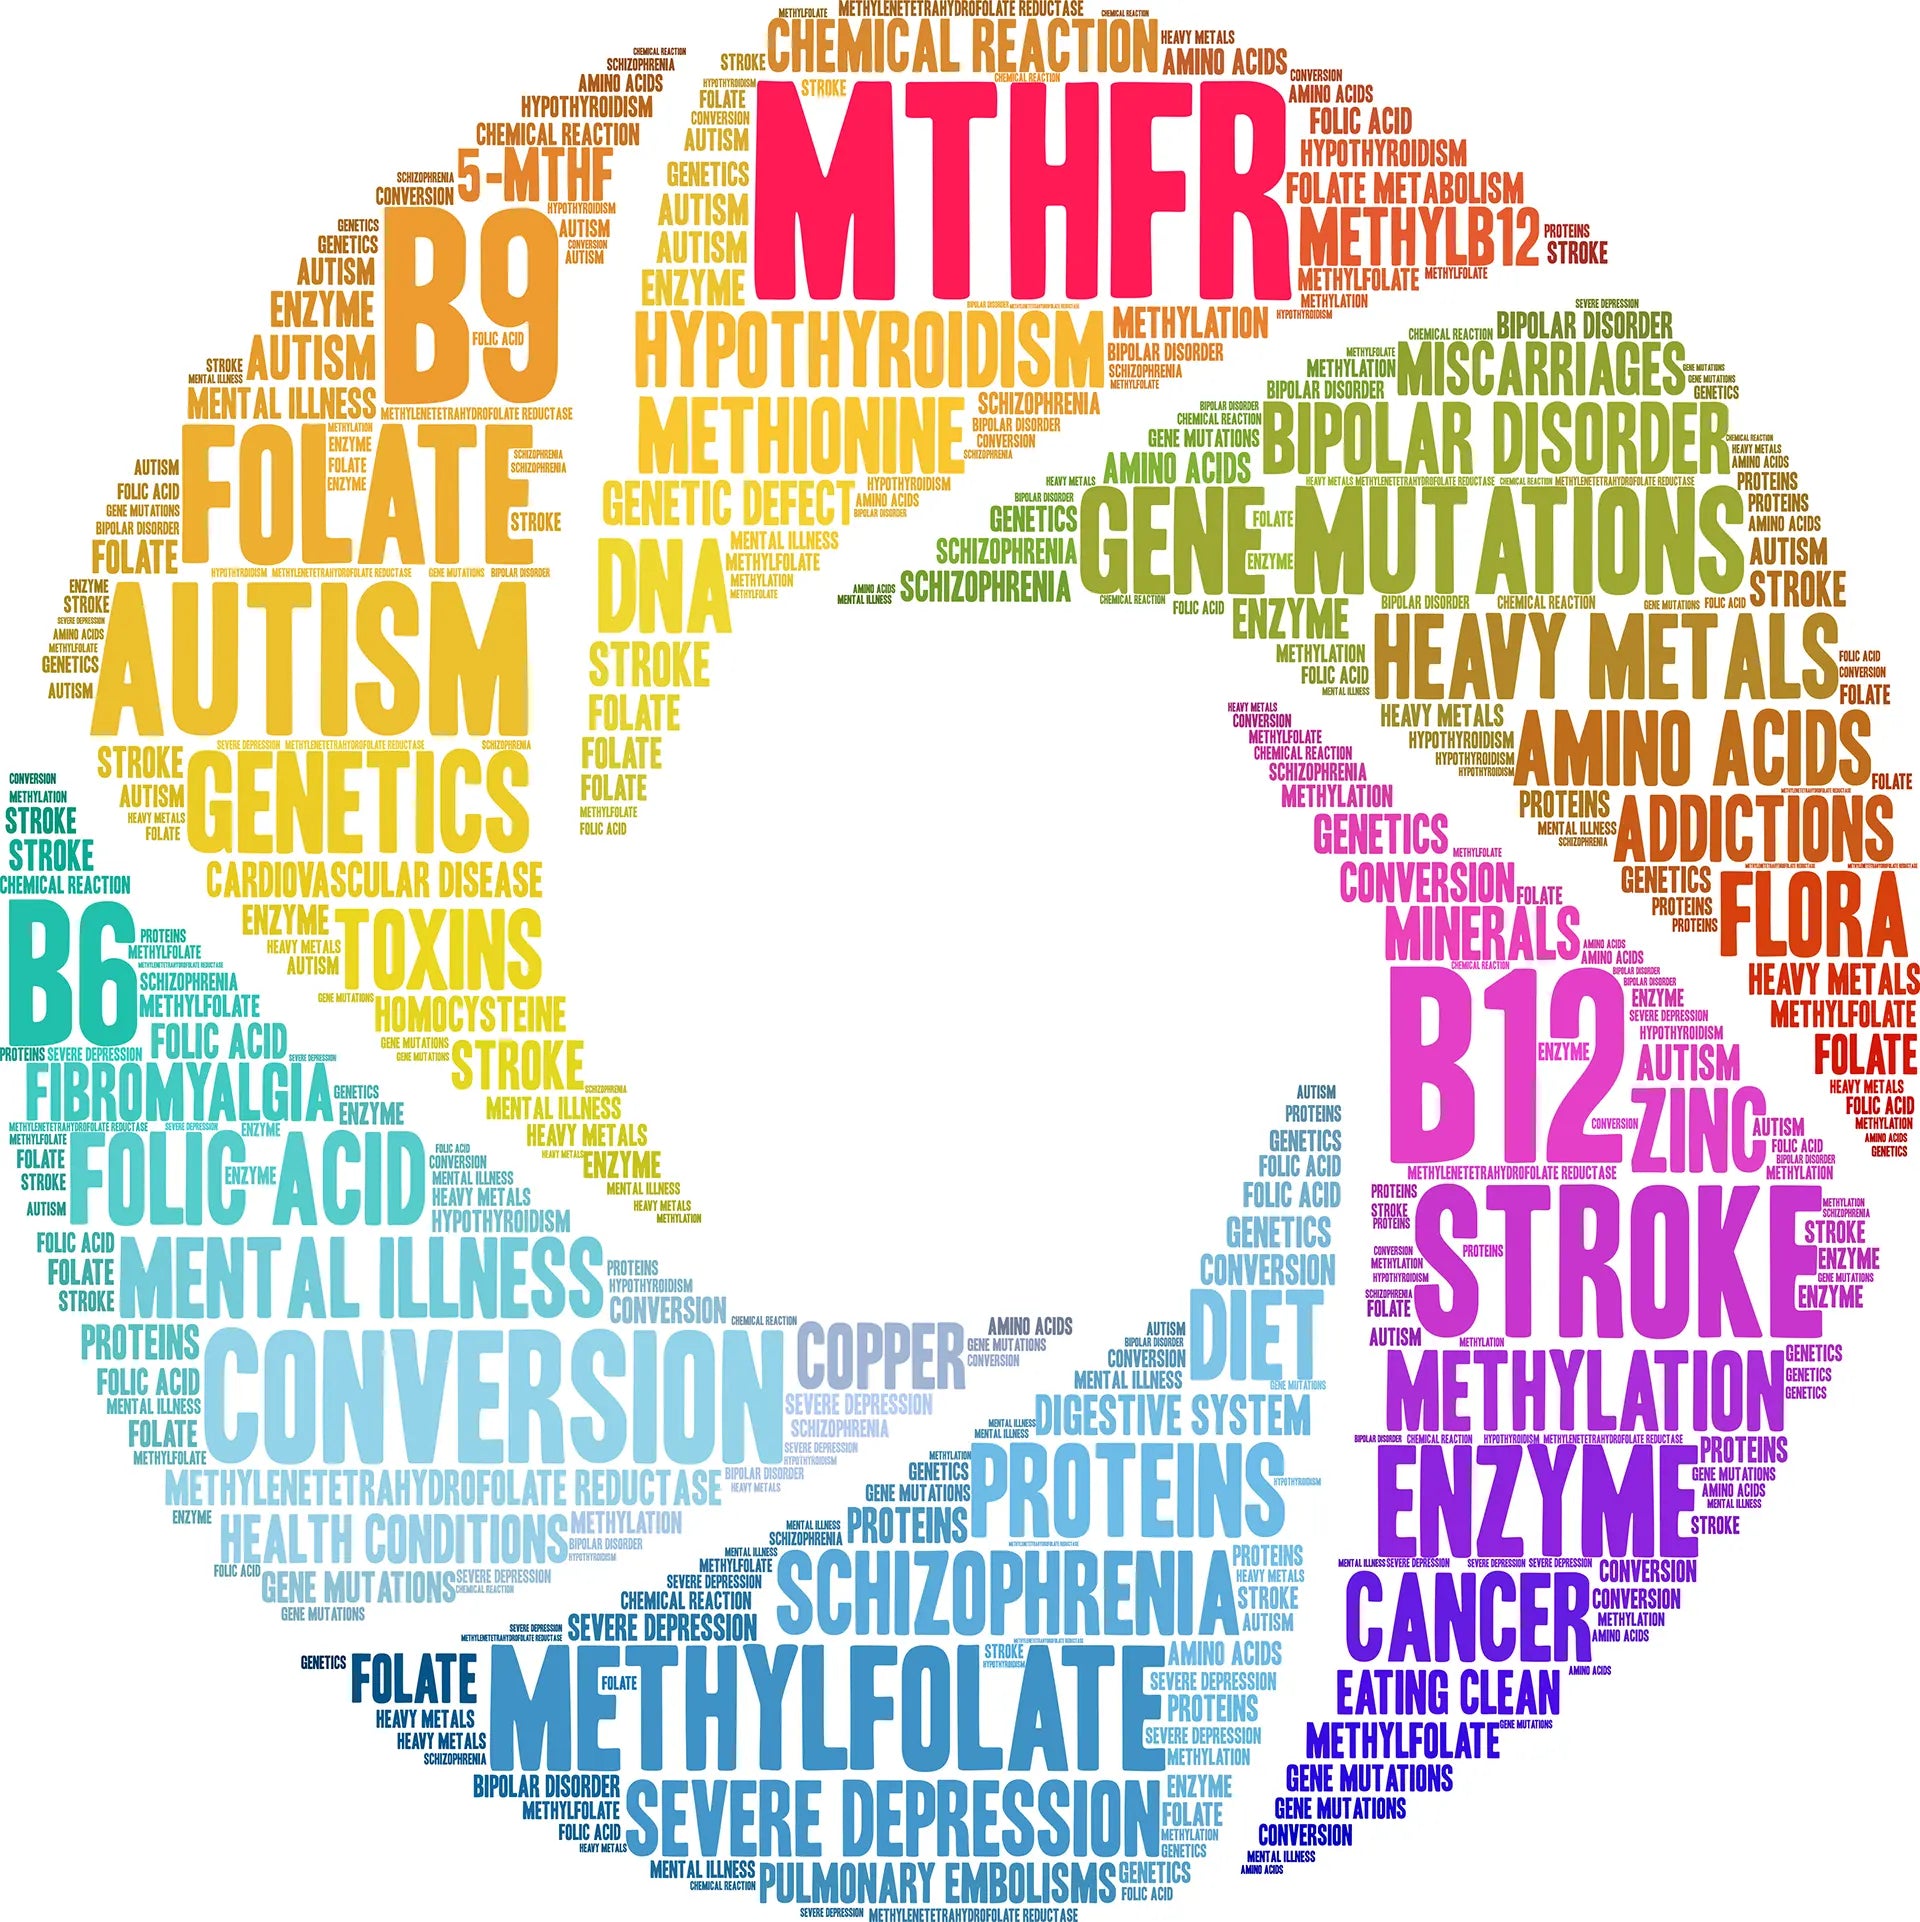 MTHFR Genetics